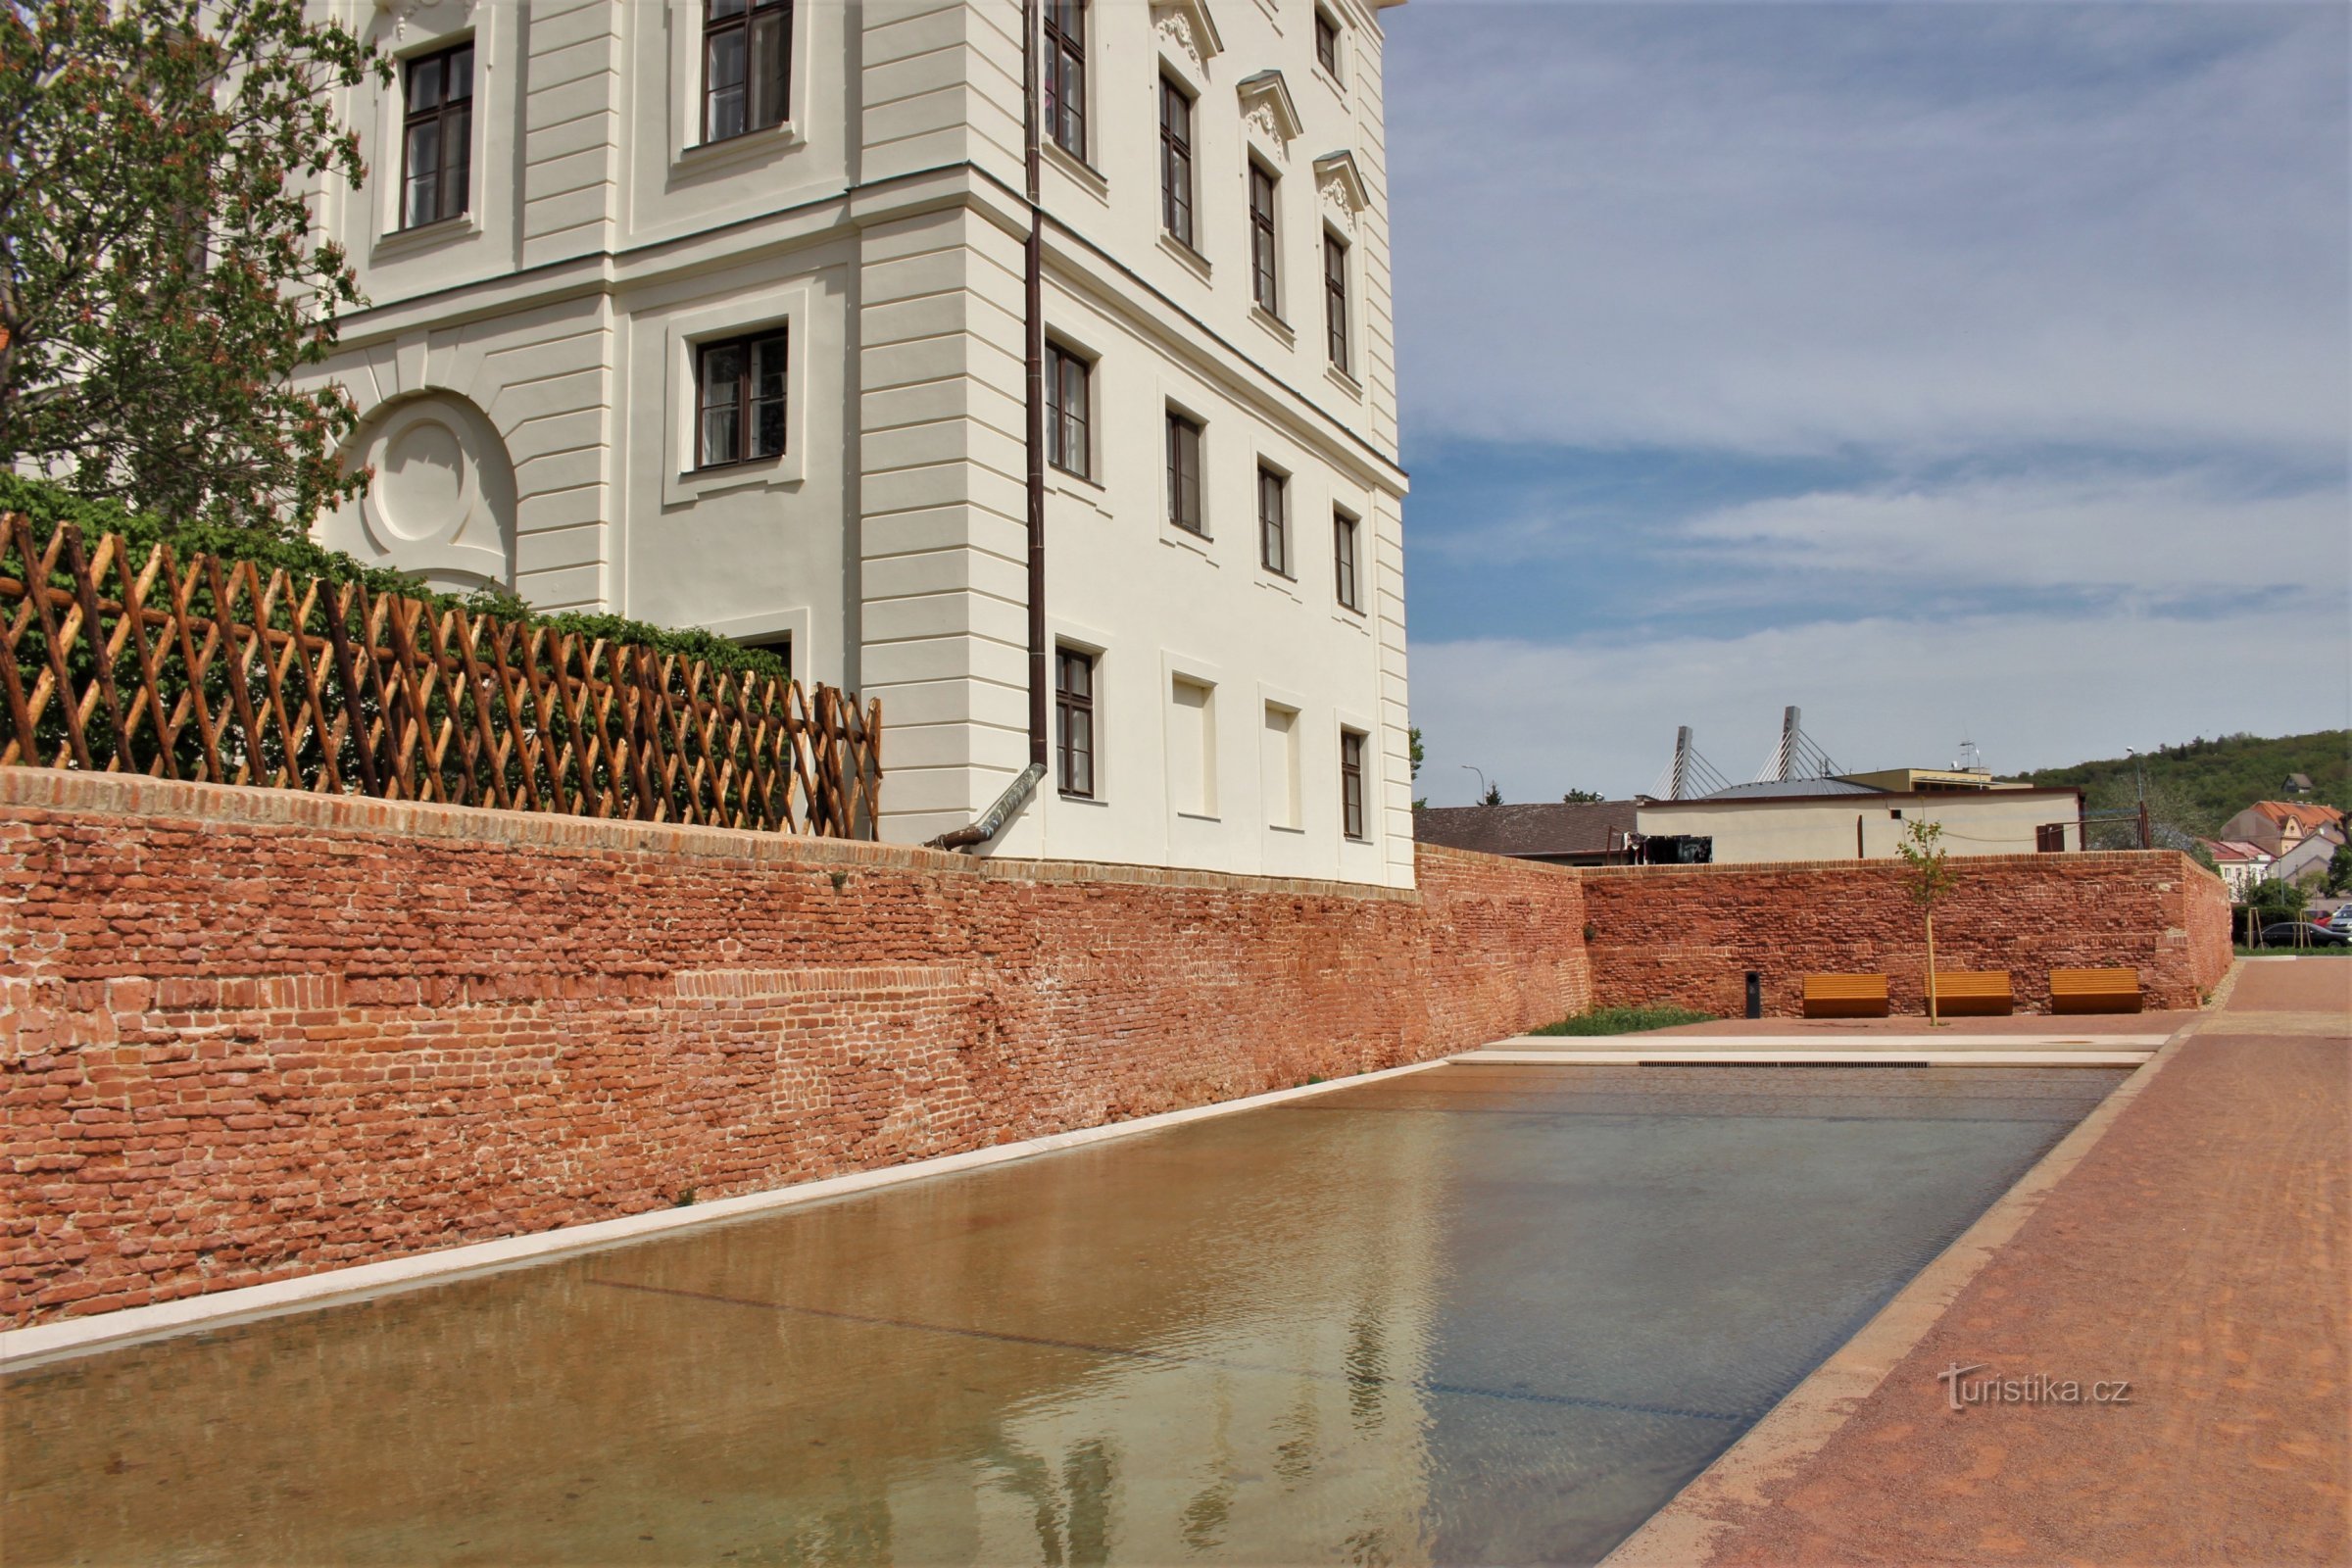 Piscina de agua bajo la muralla del castillo - mayo de 2019